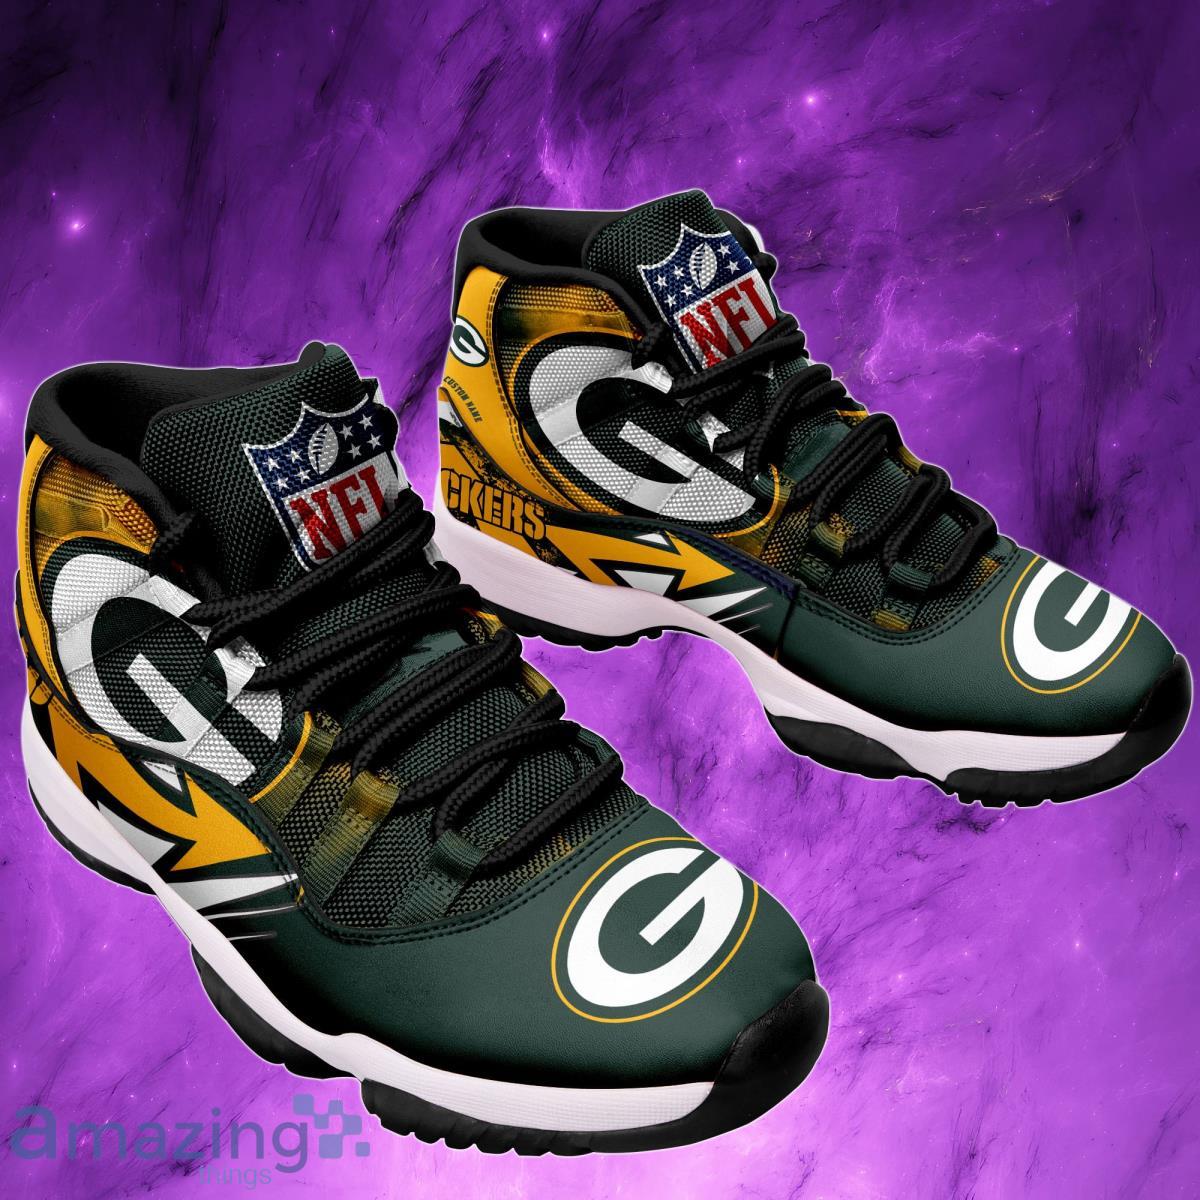 Green Bay Packers Air Jordan 11 Sneakers Gifts For Men Women